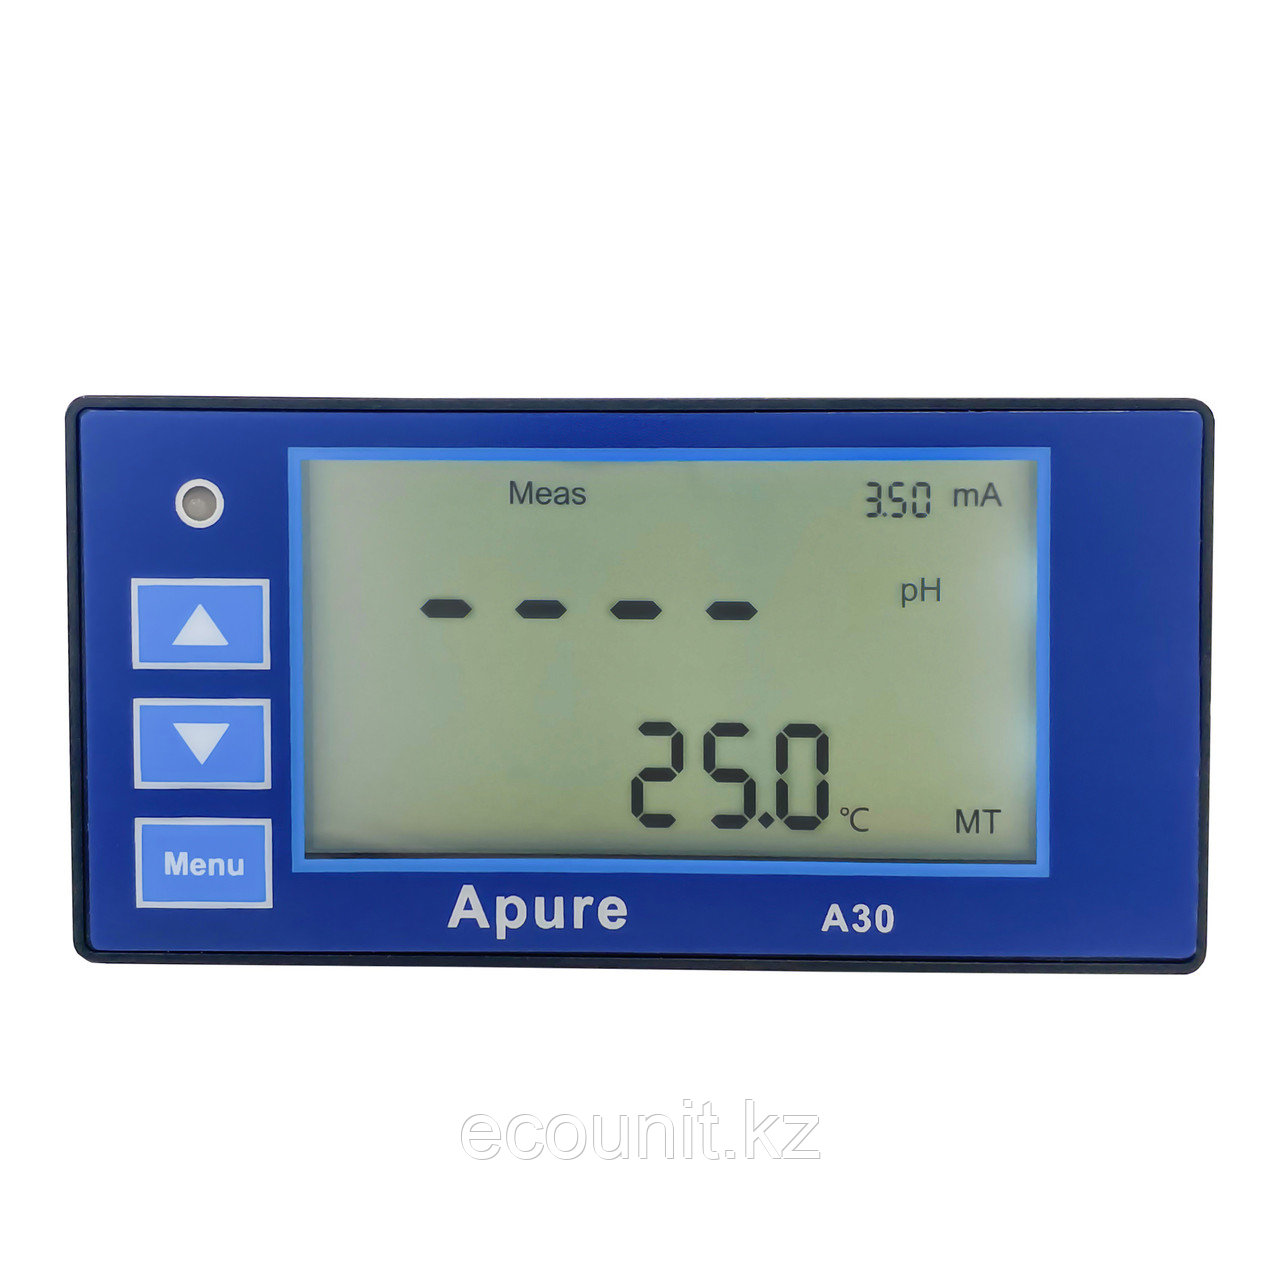 A30PR-24V Промышленный pH/ОВП контроллер (4-20мА, питание 24В) в комплекте с GRT1010 Промышленный pH электрод